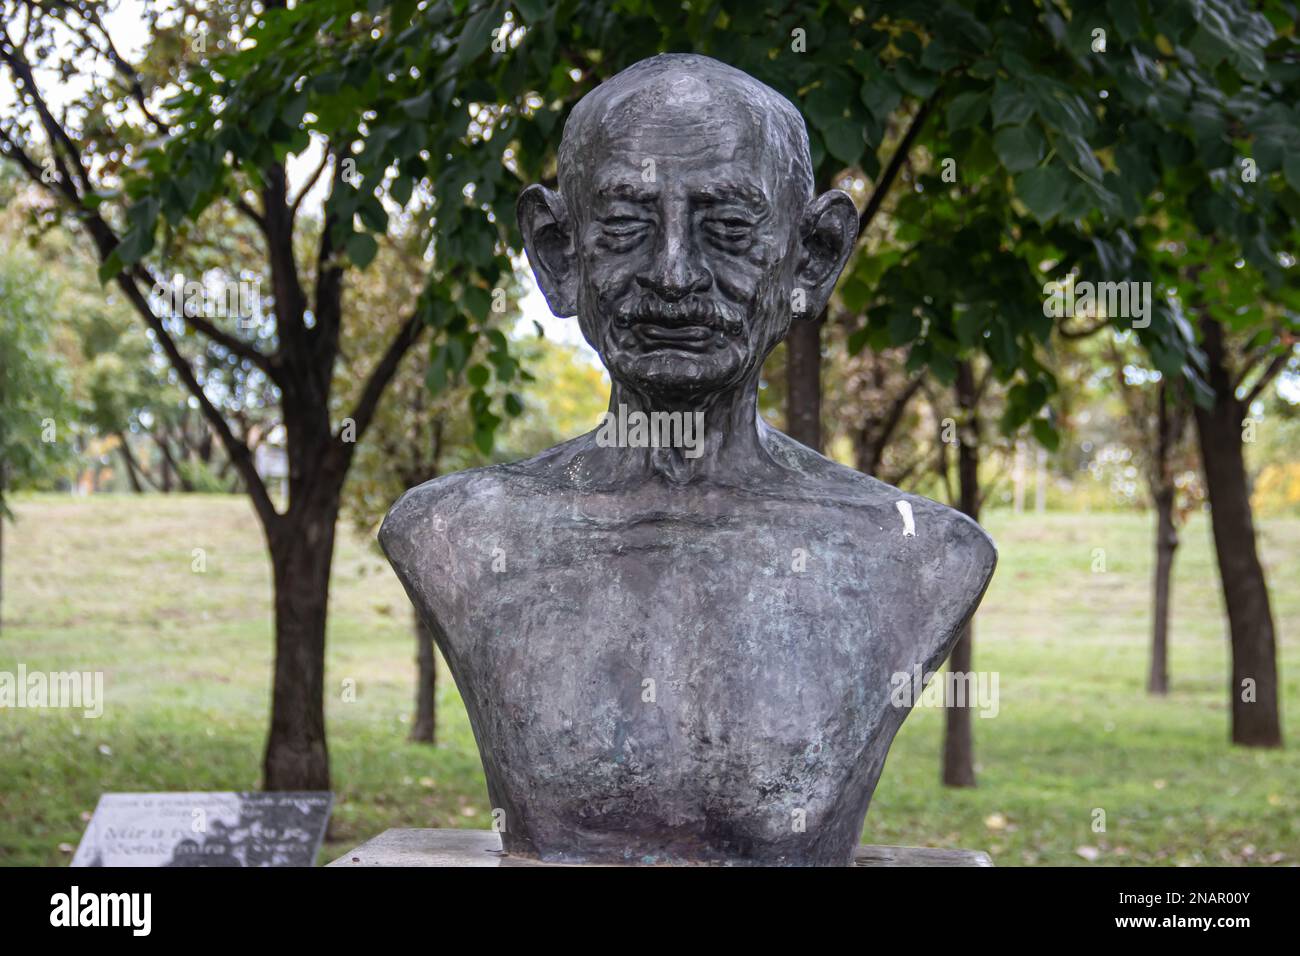 Statue von Mahatma Gandhy, Schöpfer der weltweiten Bewegung des gewaltfreien Widerstands, im öffentlichen Park in Belgrad, Serbien. Stockfoto